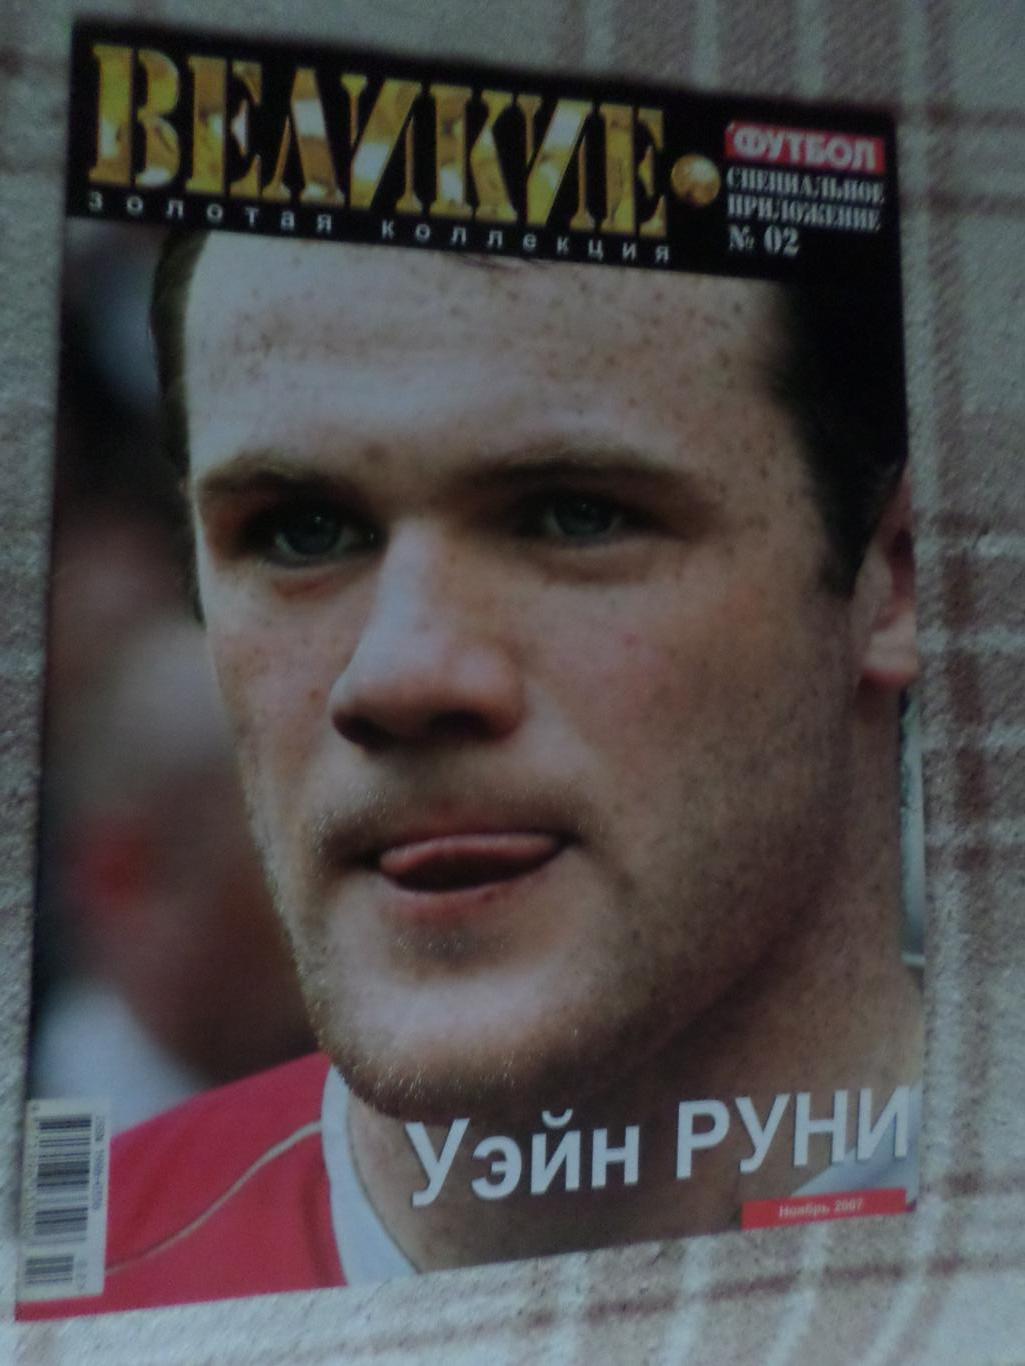 Еженедельник Футбол (Киев) спецвыпуск Великие игроки № 2 2007 г Кака, Руни 1